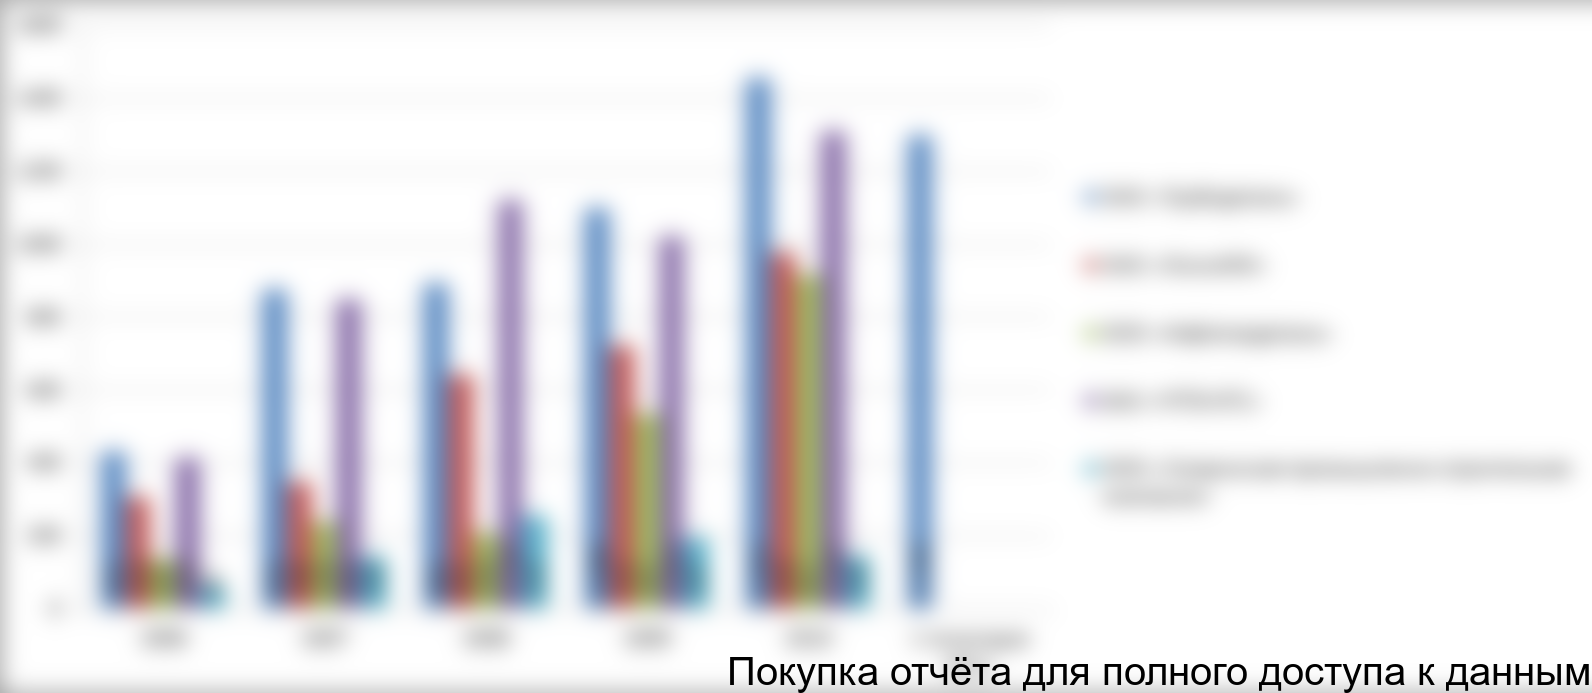 Производство отводов ТВЧ в разрезе исследуемых компаний в 2006-6 месяцев 2011 гг., млн. руб.